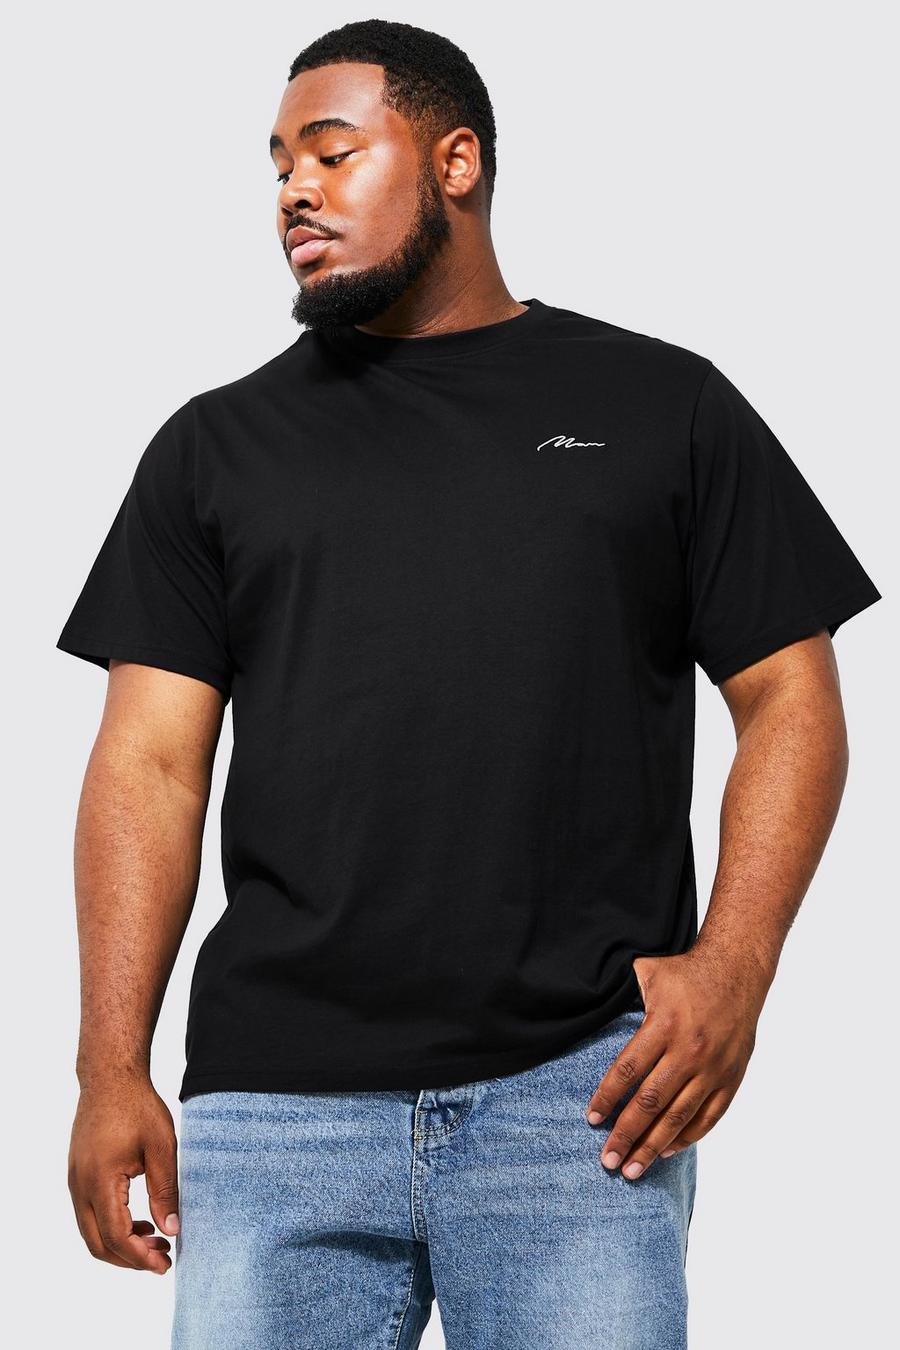 T-shirt Plus Size con logo e scritta Man, Black nero